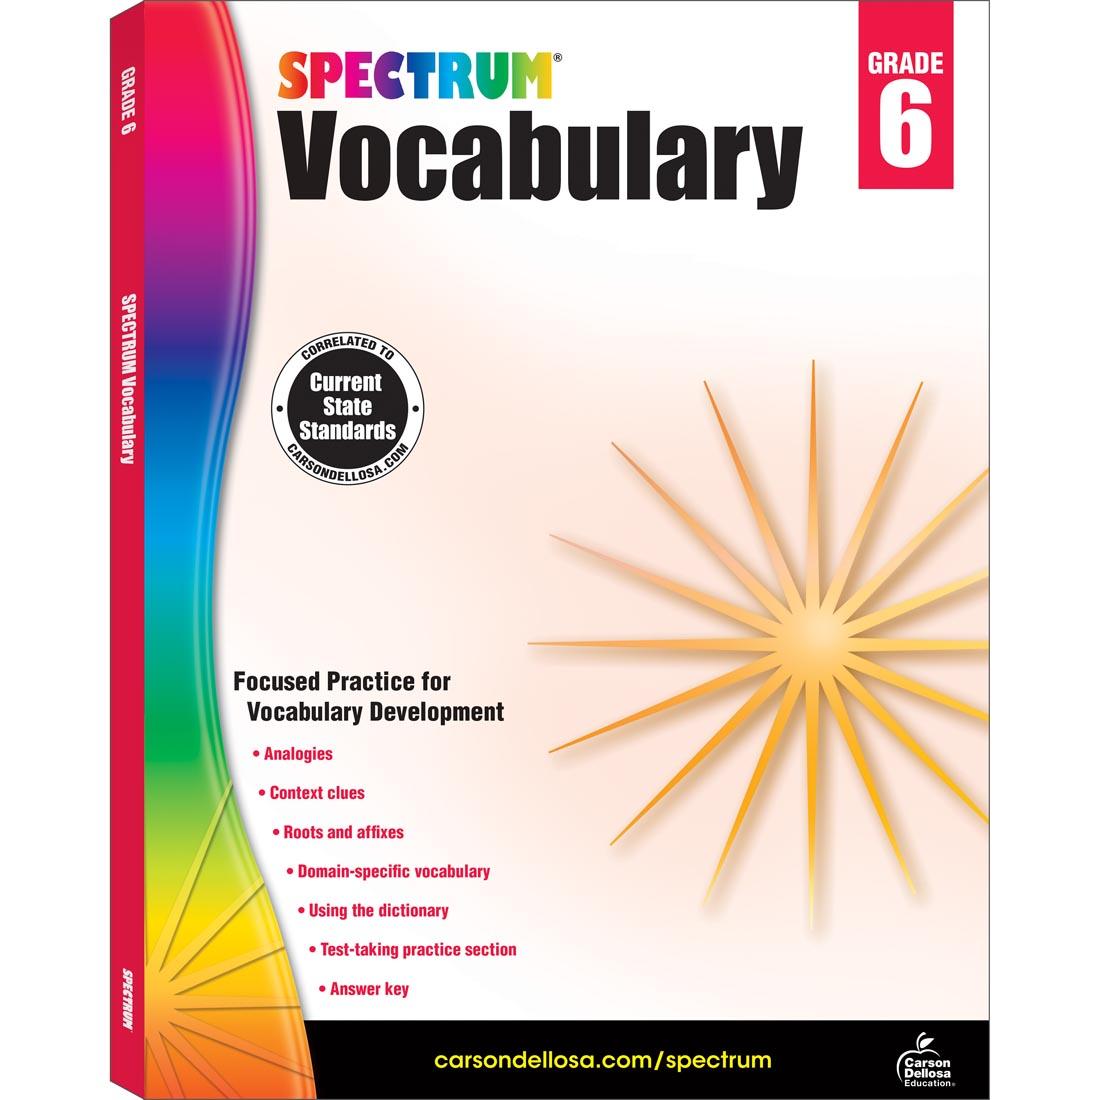 Spectrum Vocabulary Book for Grade 6